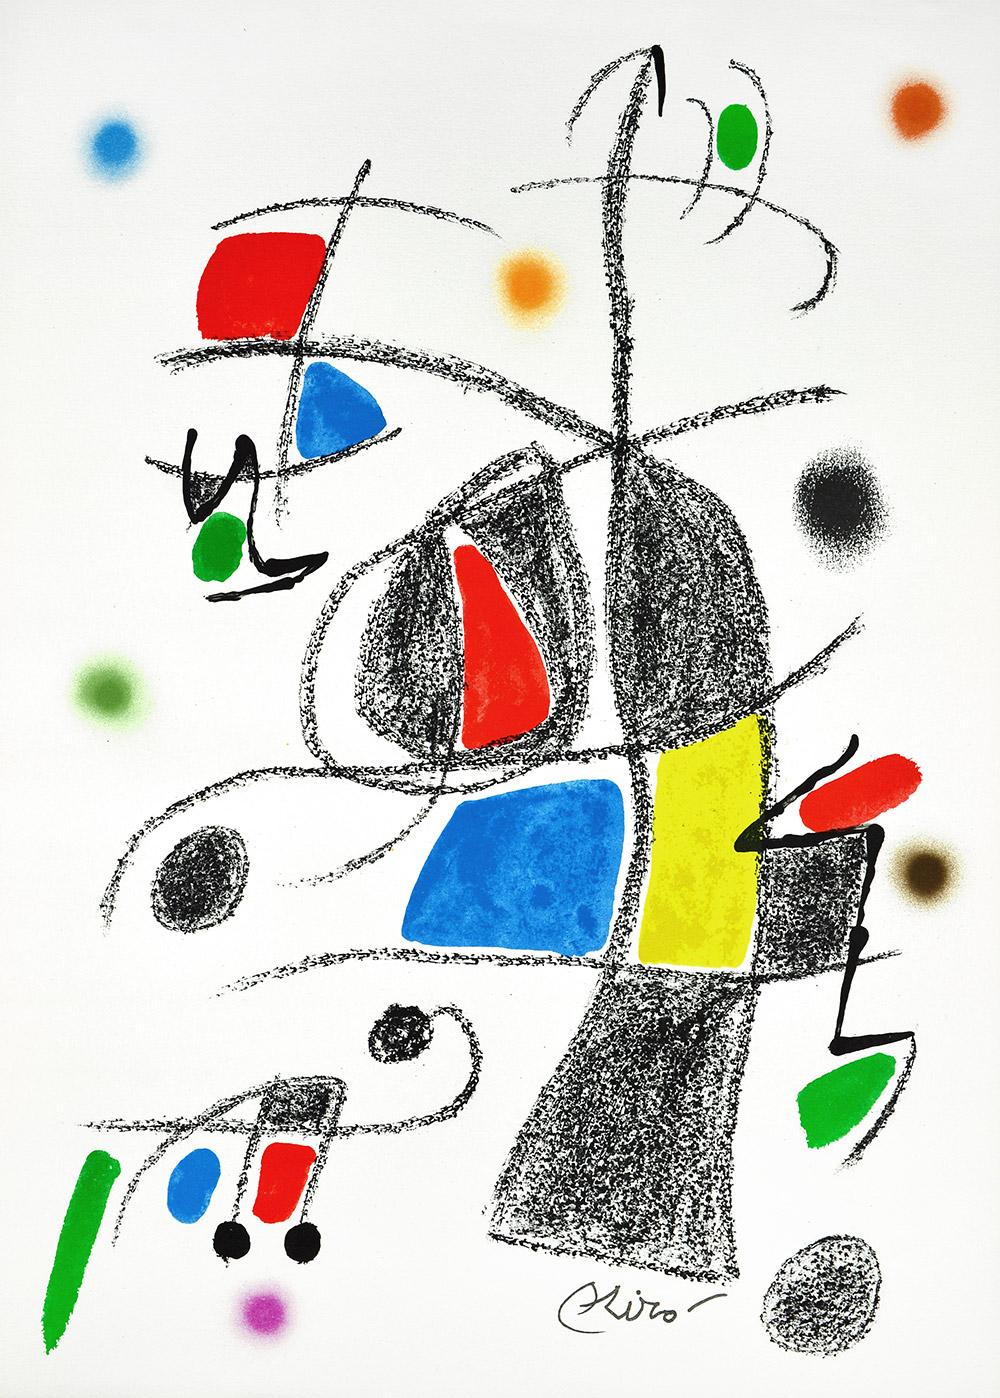 Joan Miró - Maravillas con variaciones acrósticas en el jardín de Miró XVII
Date de création : 1975
Support : Lithographie sur papier Gvarro
Édition : 1500
Taille : 49,5 x 35,5 cm
Observations : Lithographie sur plaque de papier Gvarro signée. Édité